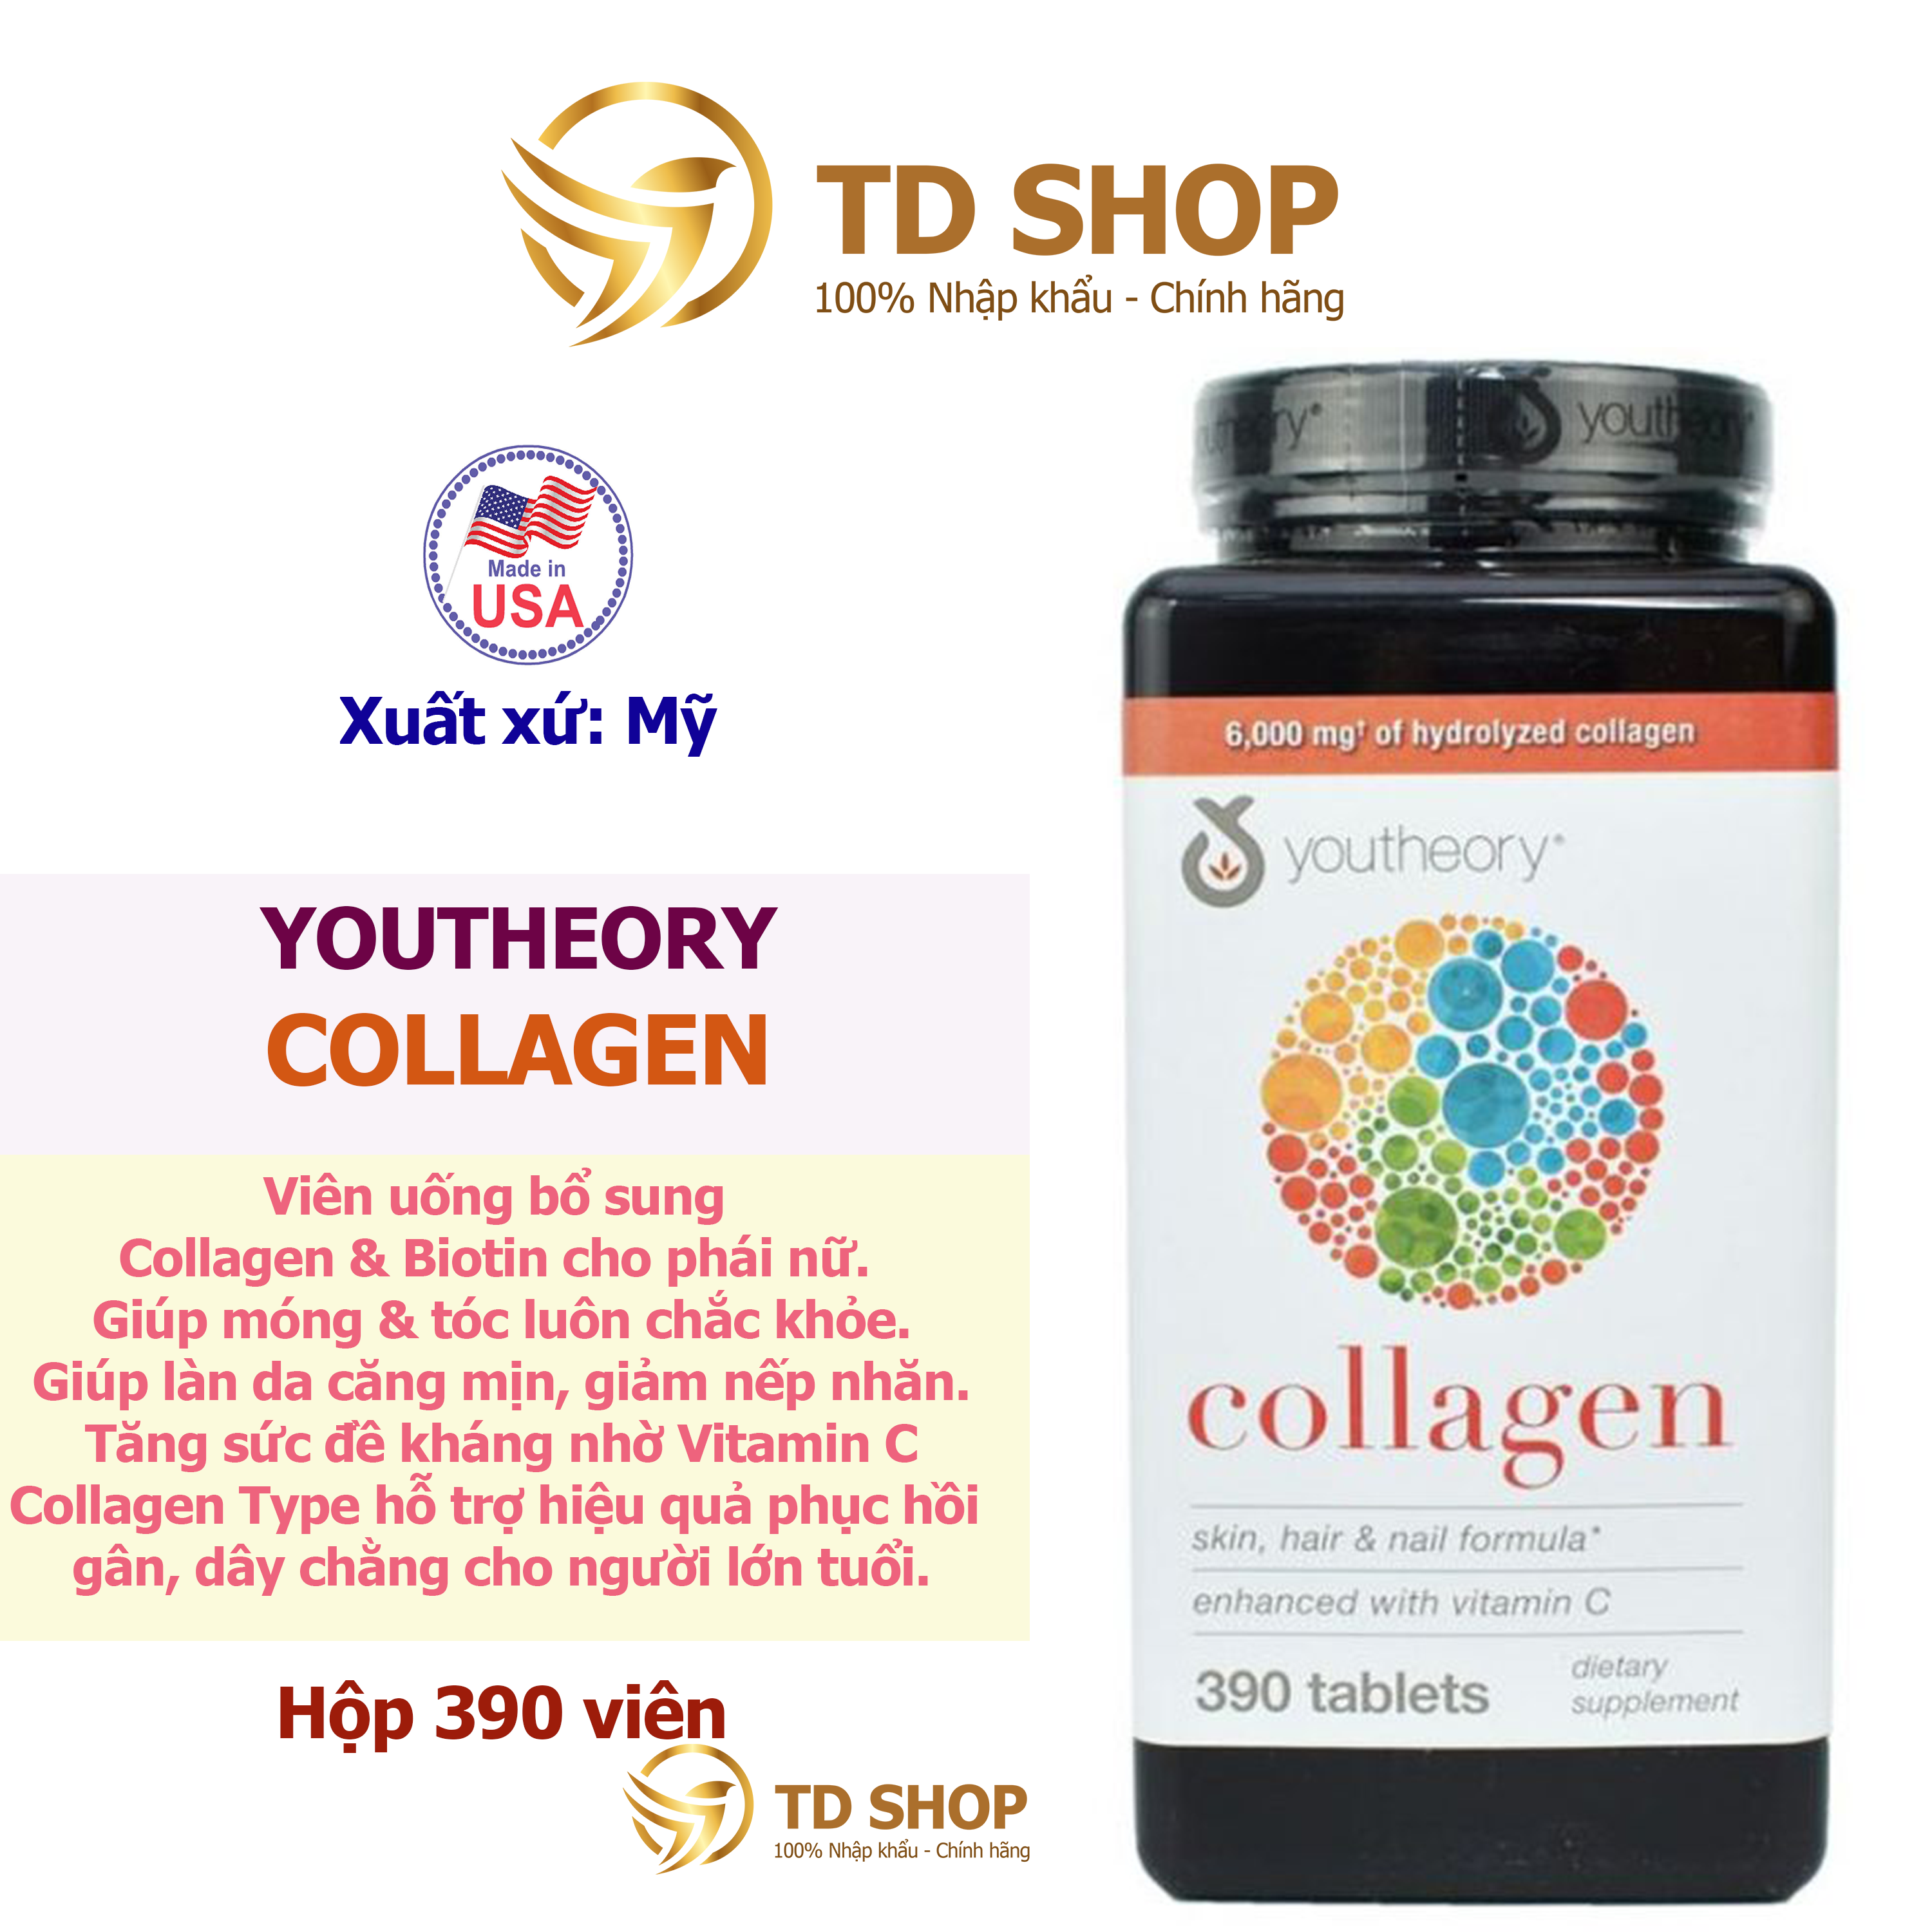 NK Mỹ Viên uống bổ sung collagen youtheory hộp 390 viên - TD Shop